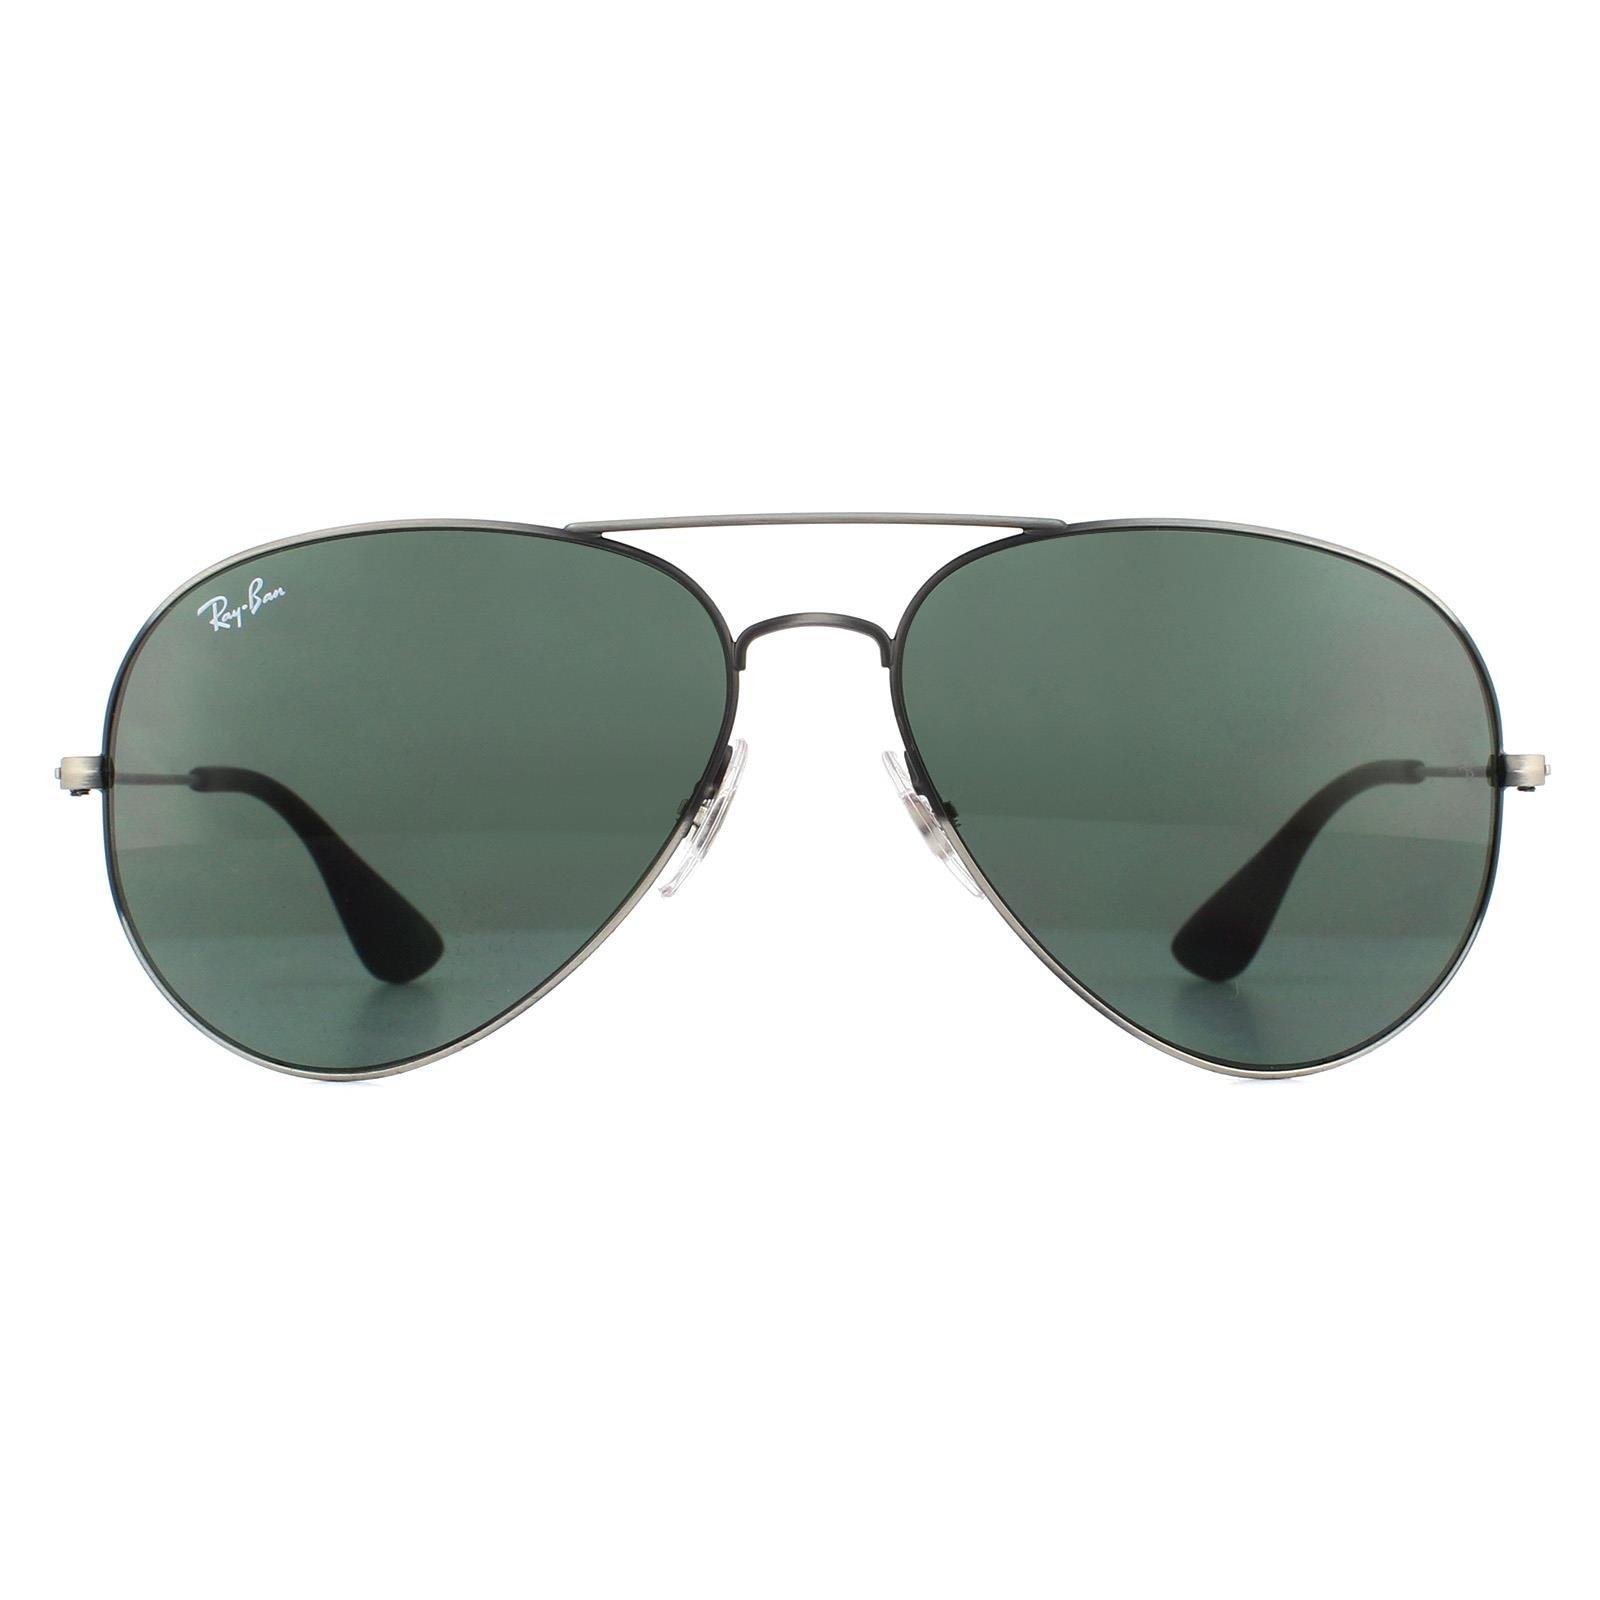 Антикварные черные зеленые классические солнцезащитные очки-авиаторы Ray-Ban, серый